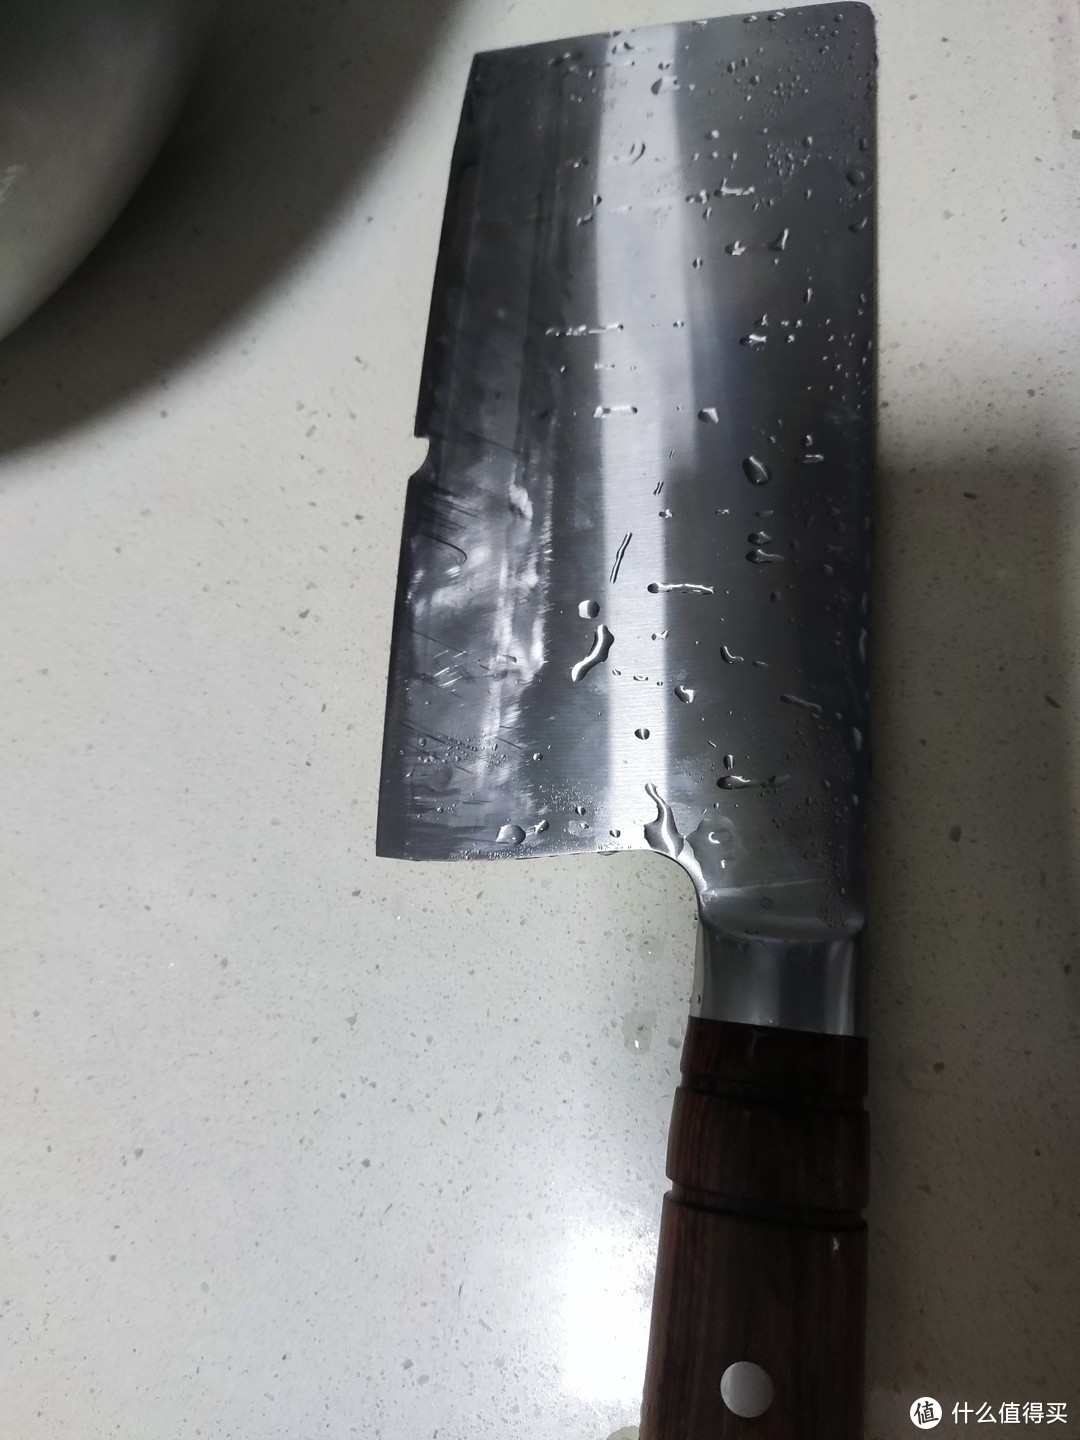 刃口在刀的中间位置